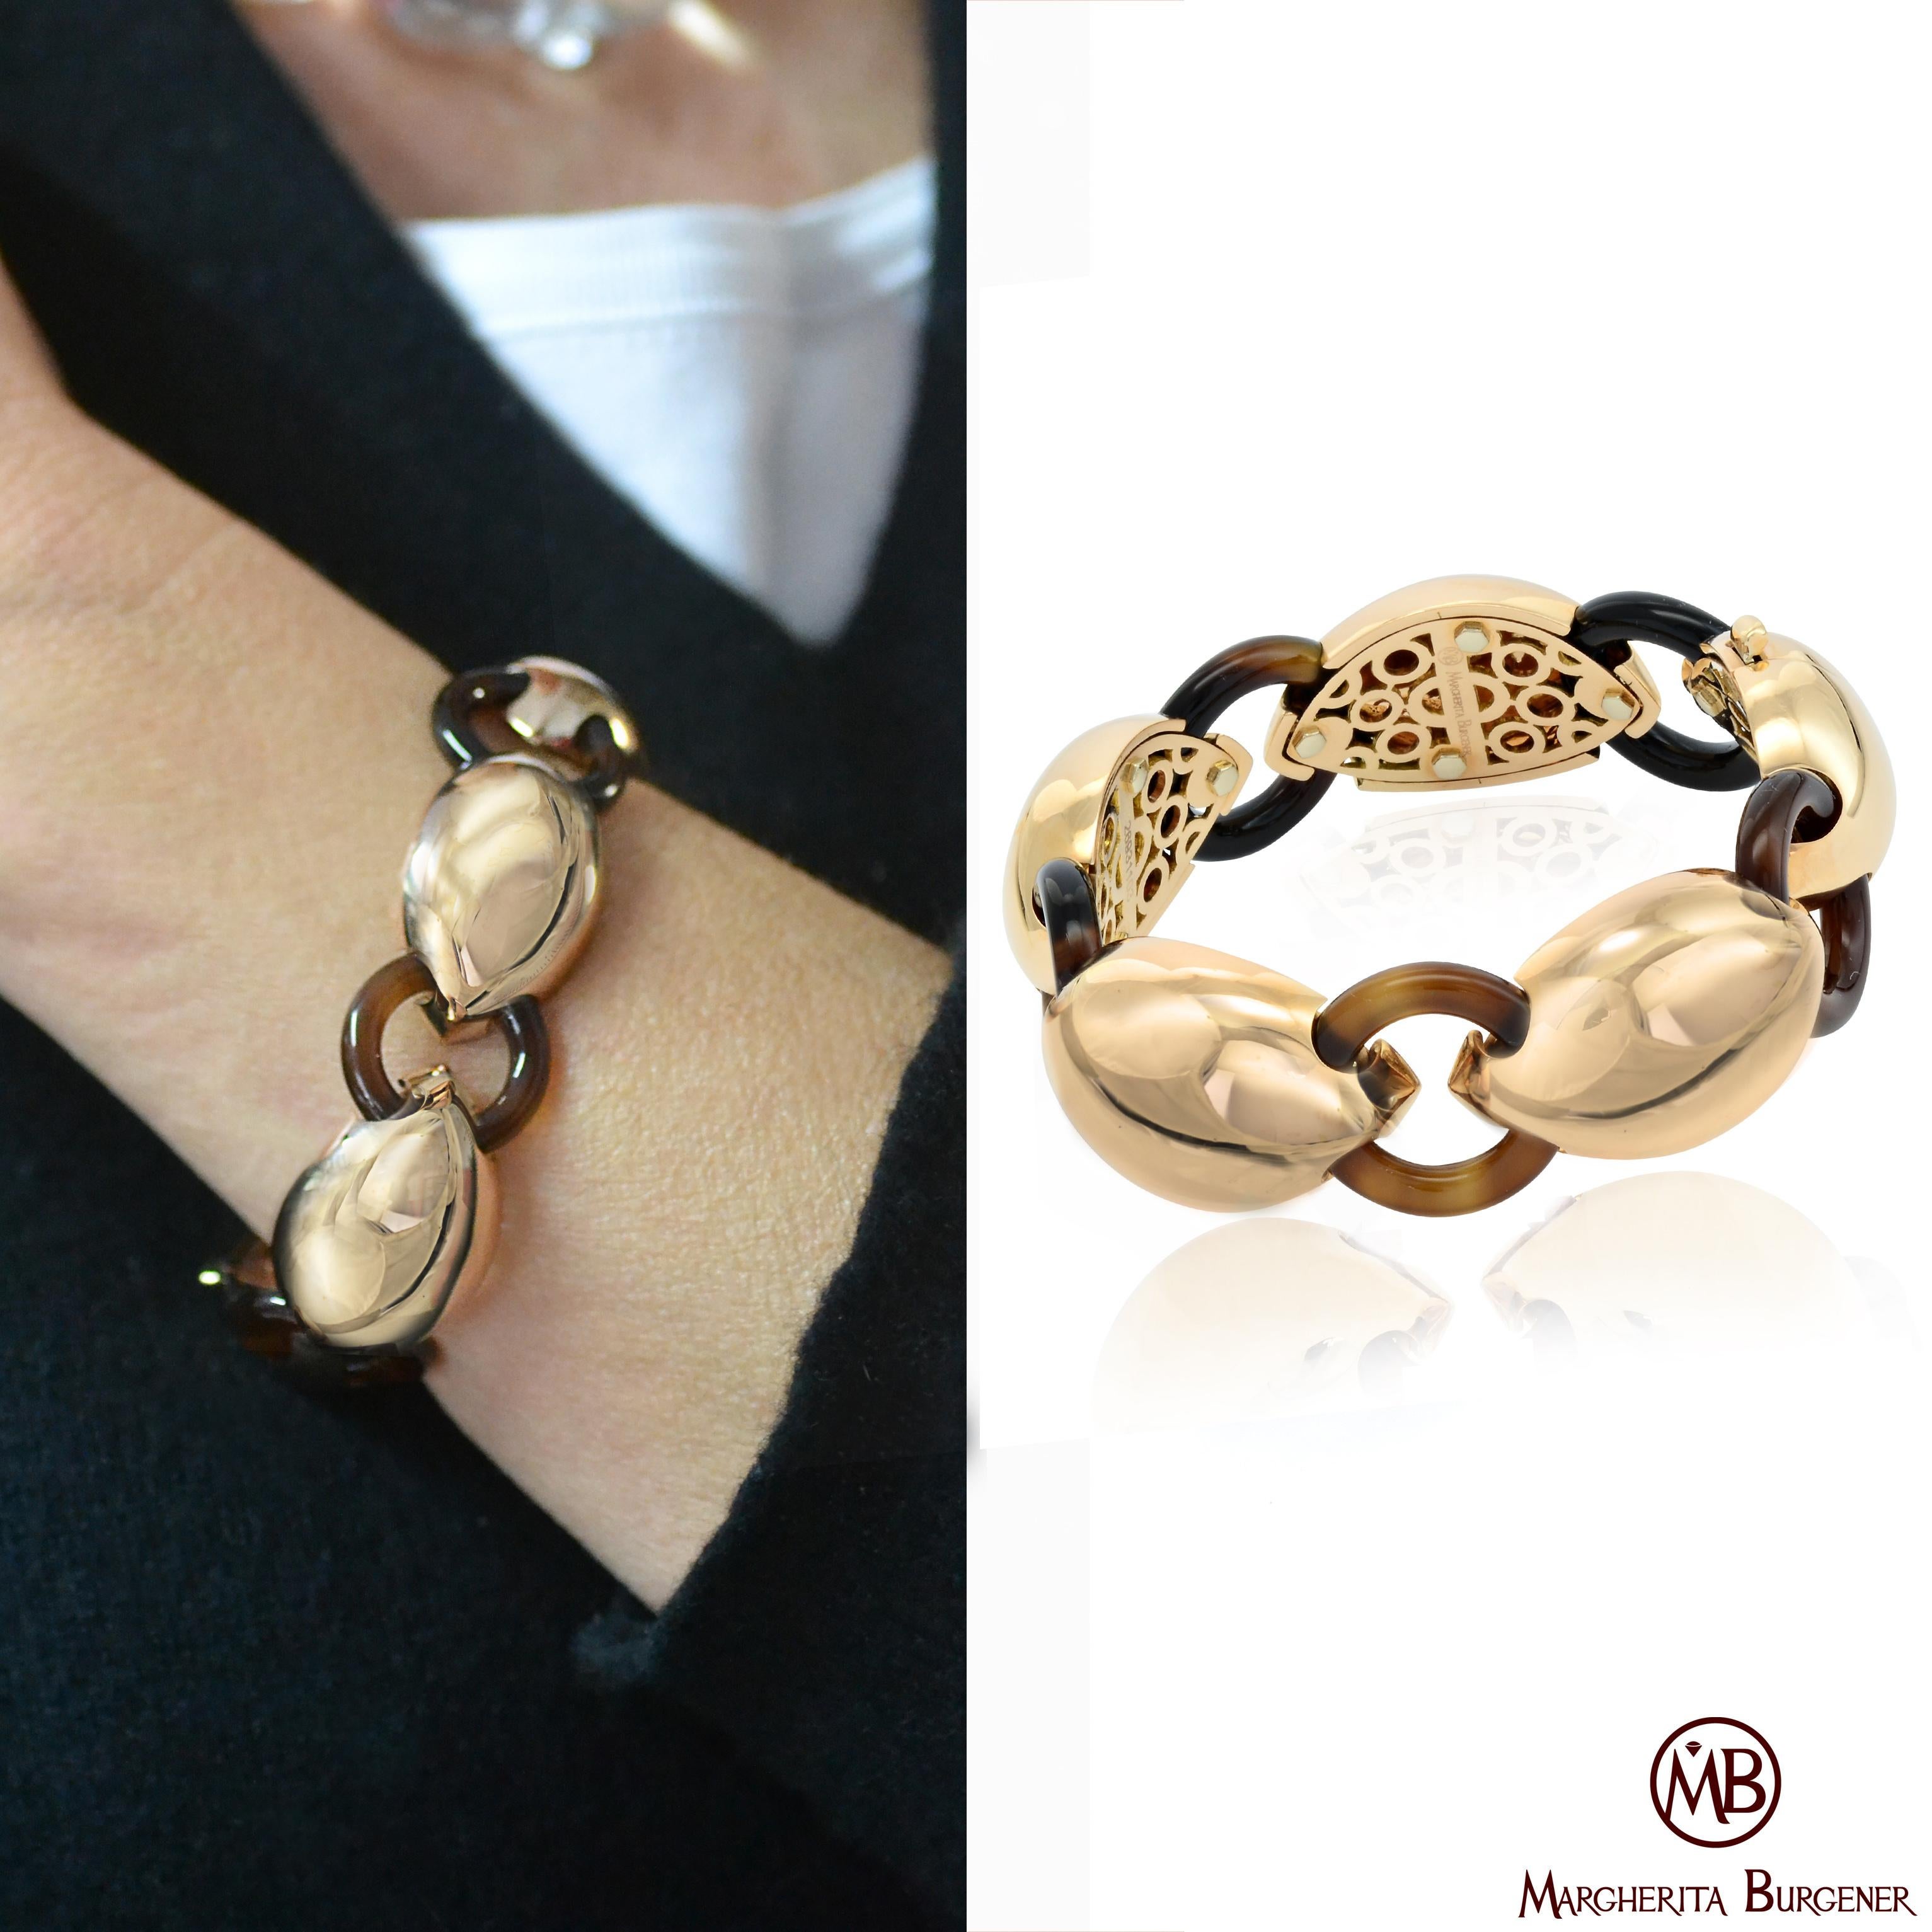 Fabriqué à la main en Italie, dans l'atelier de Margherita Burgener, le bracelet est composé d'une série de motifs bombés en or rose 18 KT poli, reliés par des ovales en agate brune naturelle.
La partie intérieure de chaque motif est joliment